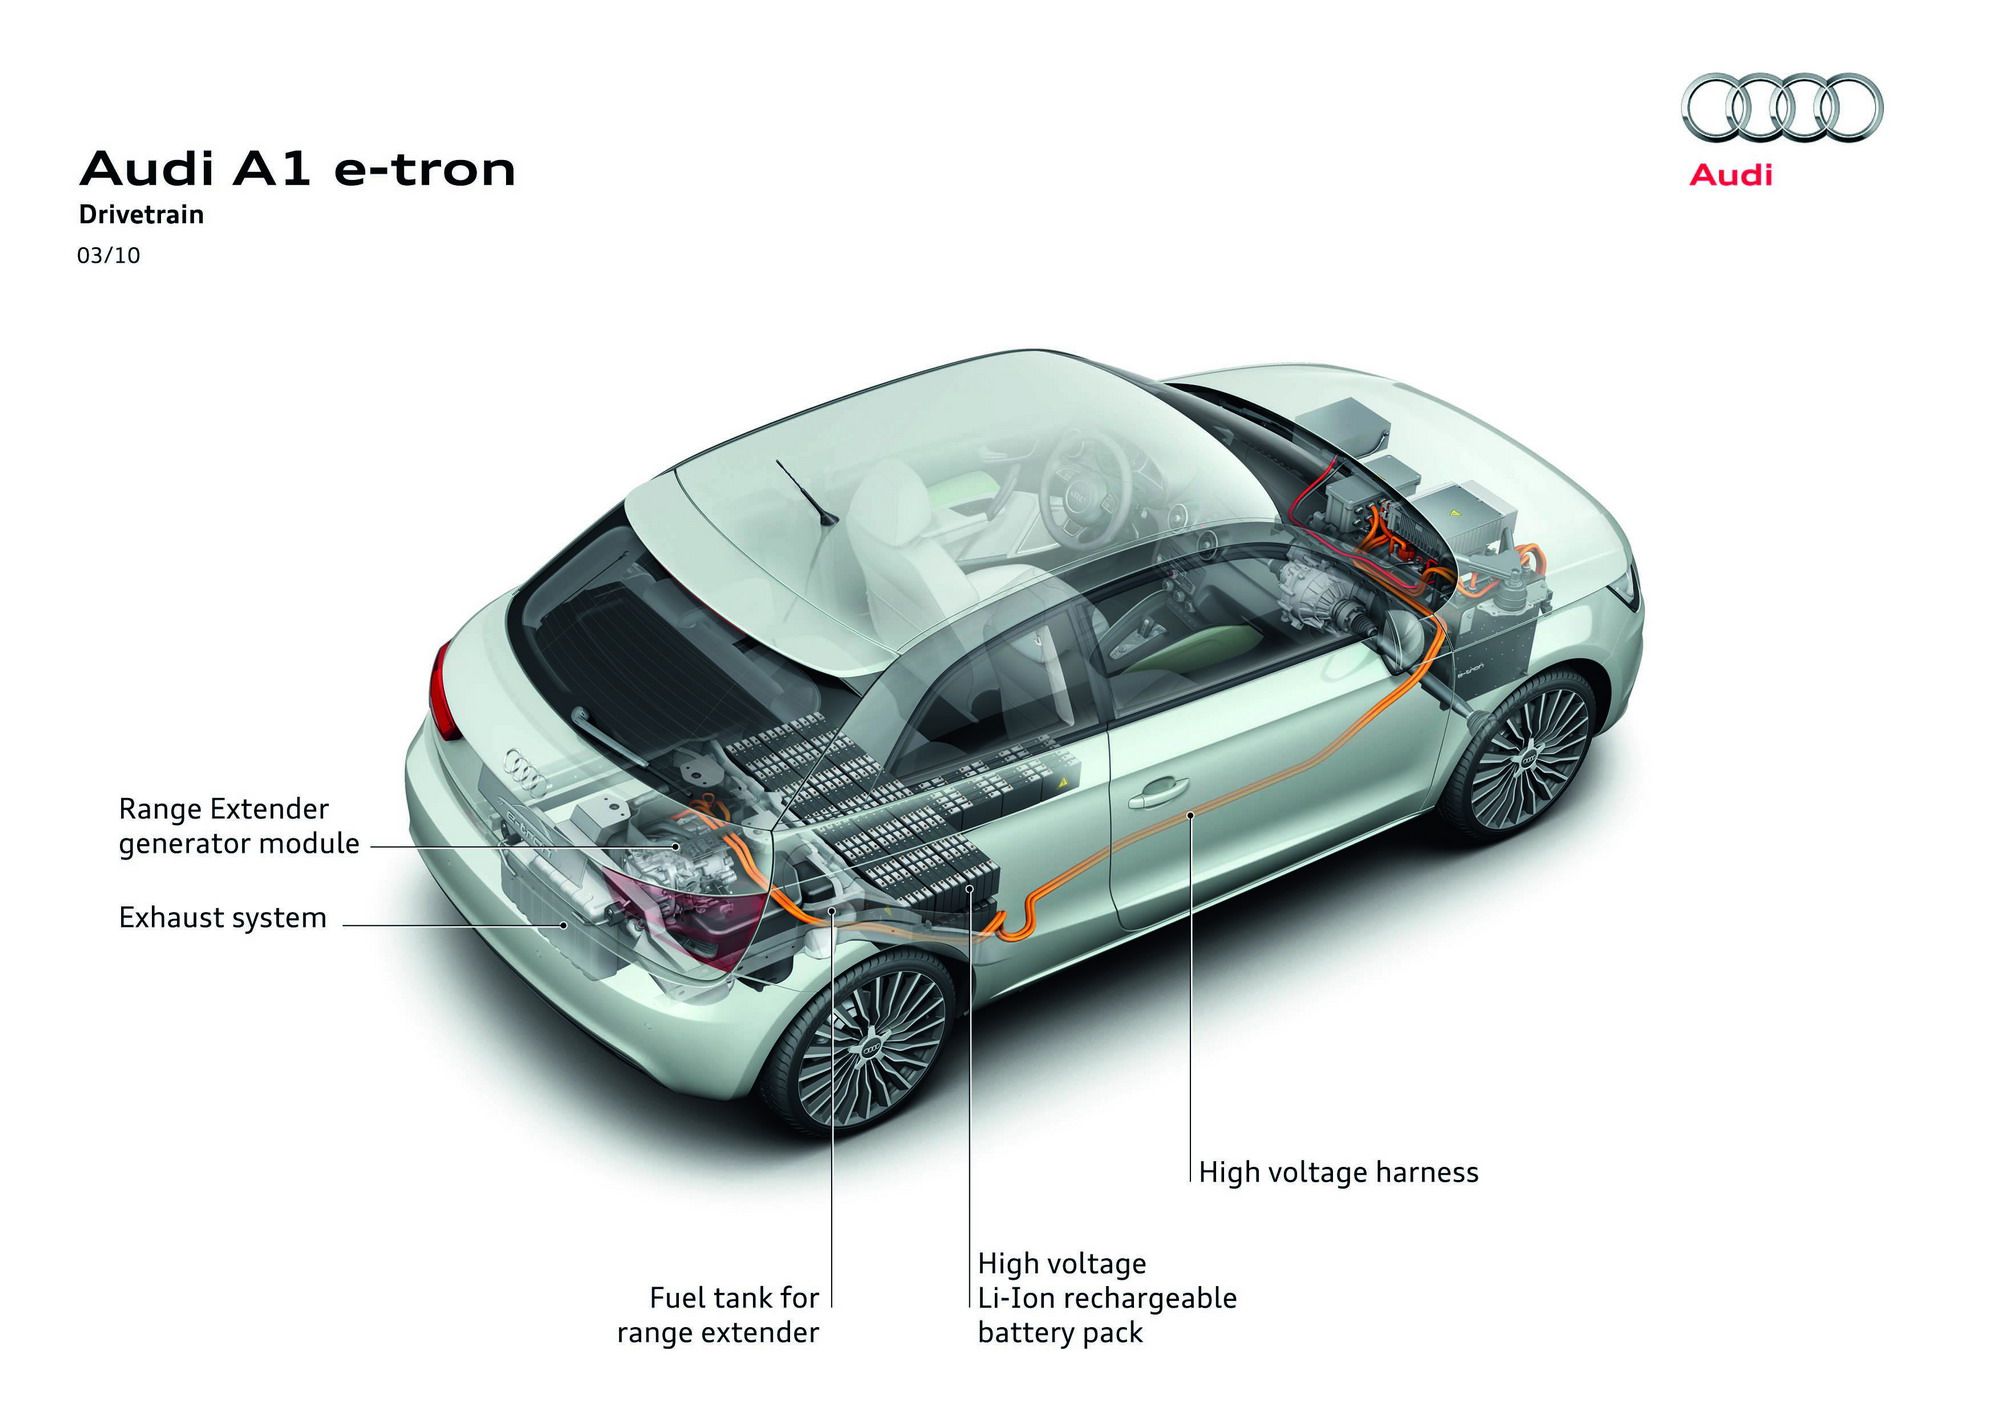 2010 Audi A1 e-tron Concept